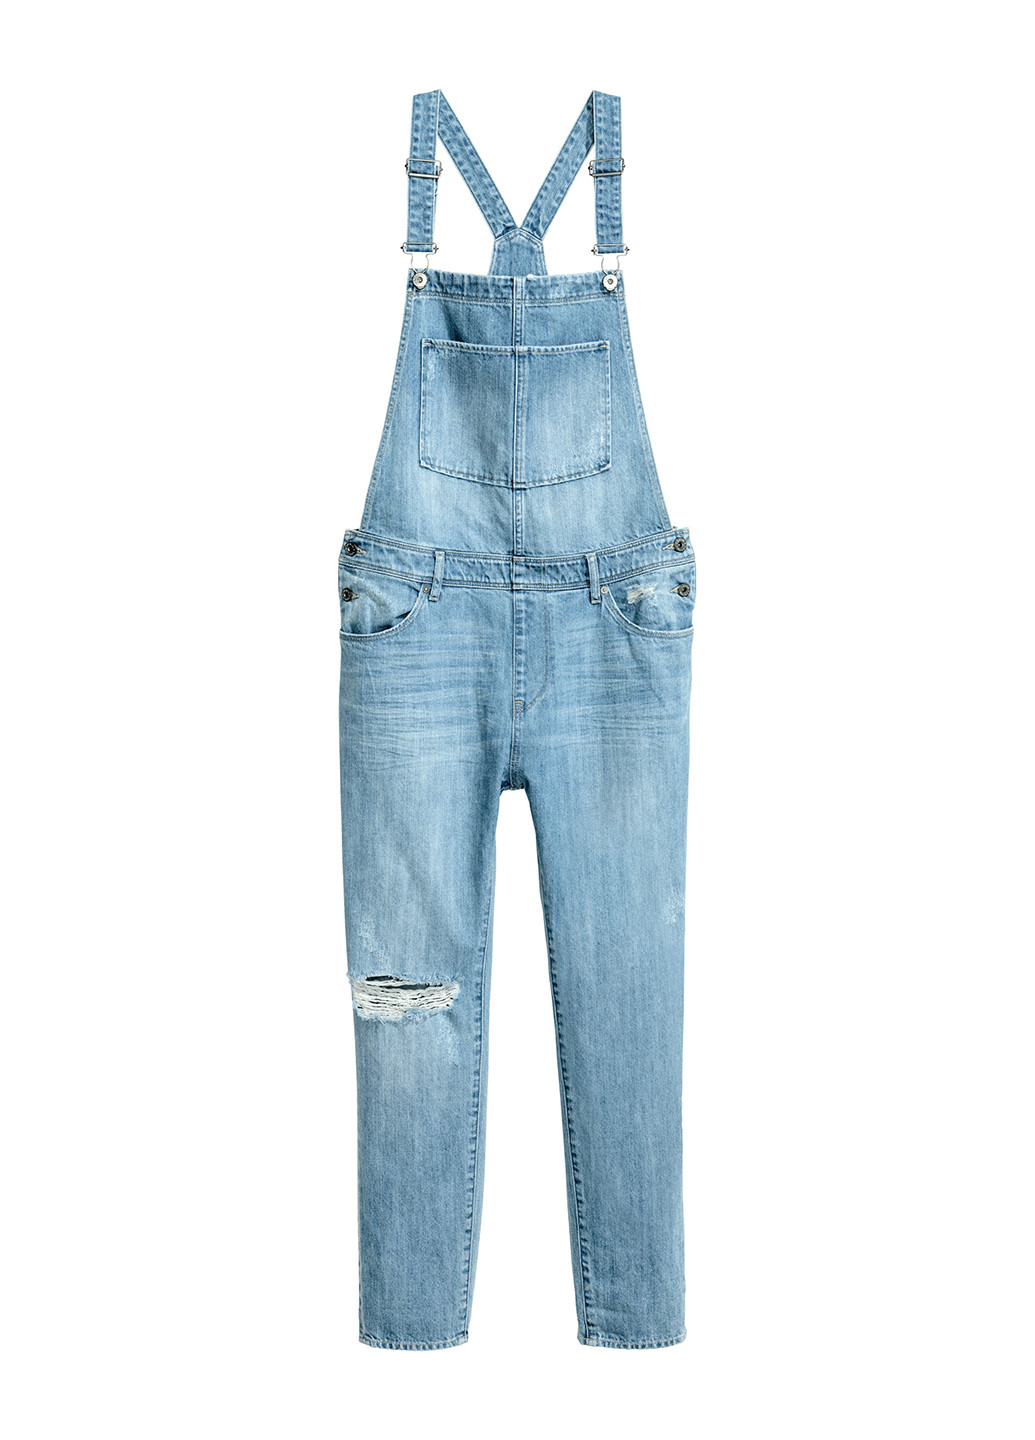 Комбинезон H&M комбинезон-брюки однотонный голубой денил